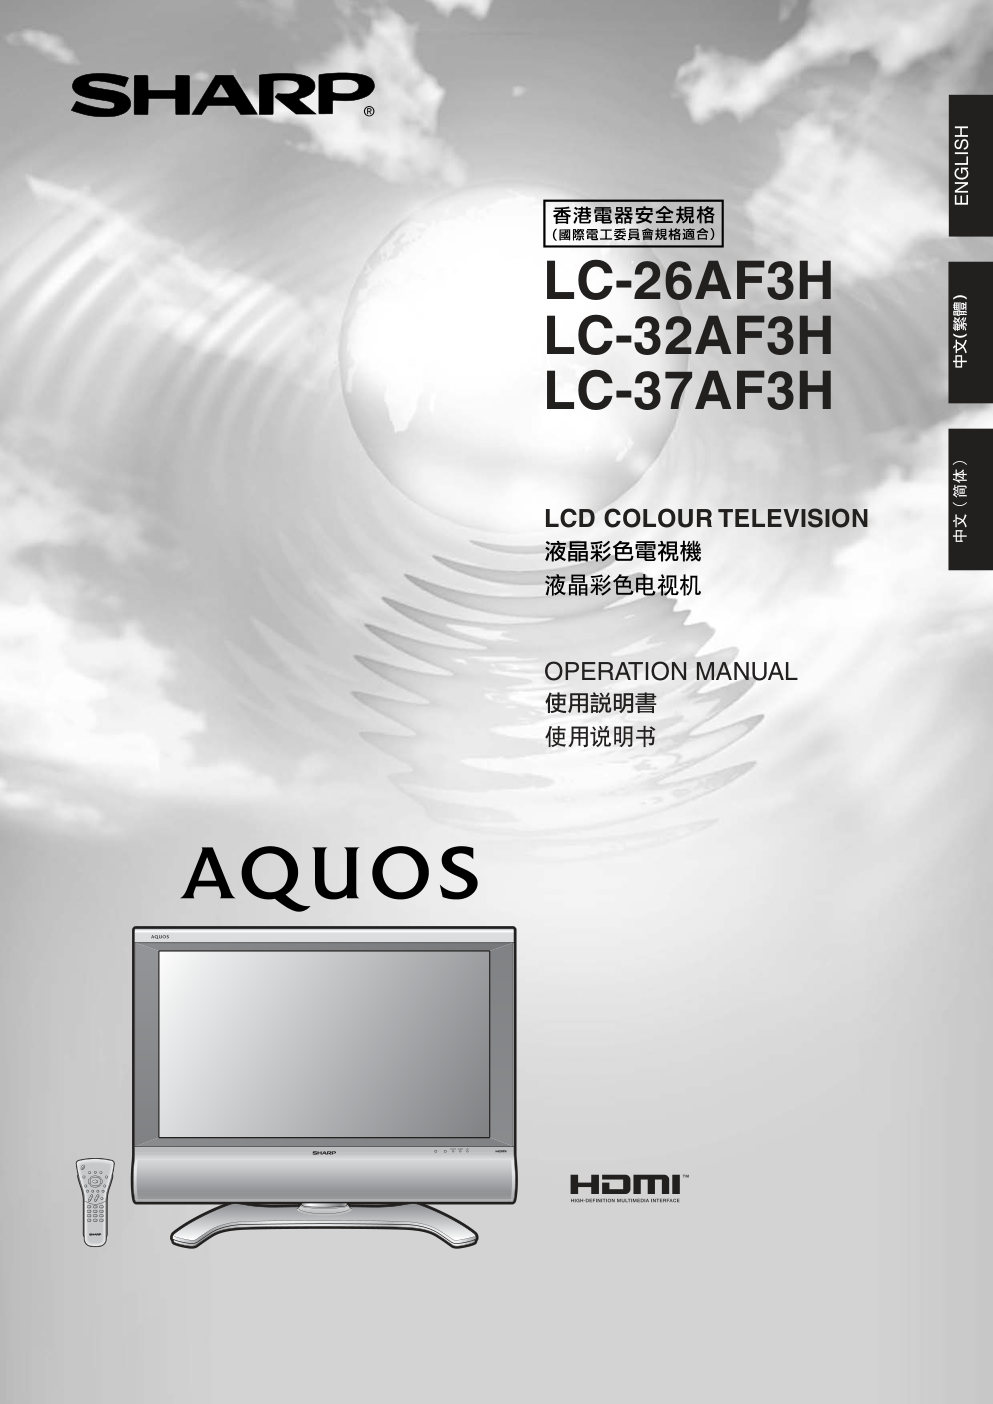 声宝LC-26AF3H型液晶电视机说明书-0